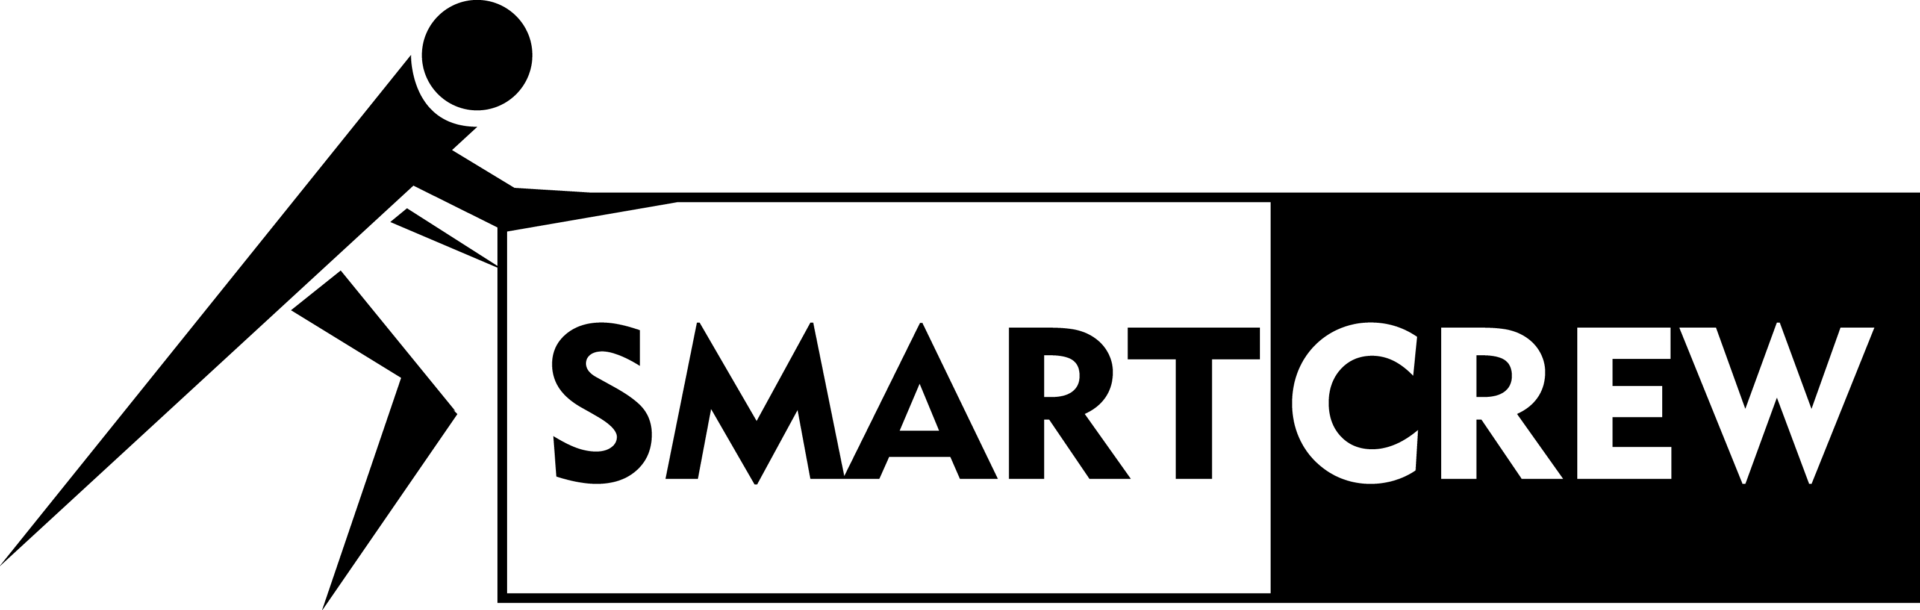 SmartCrew_logo_white